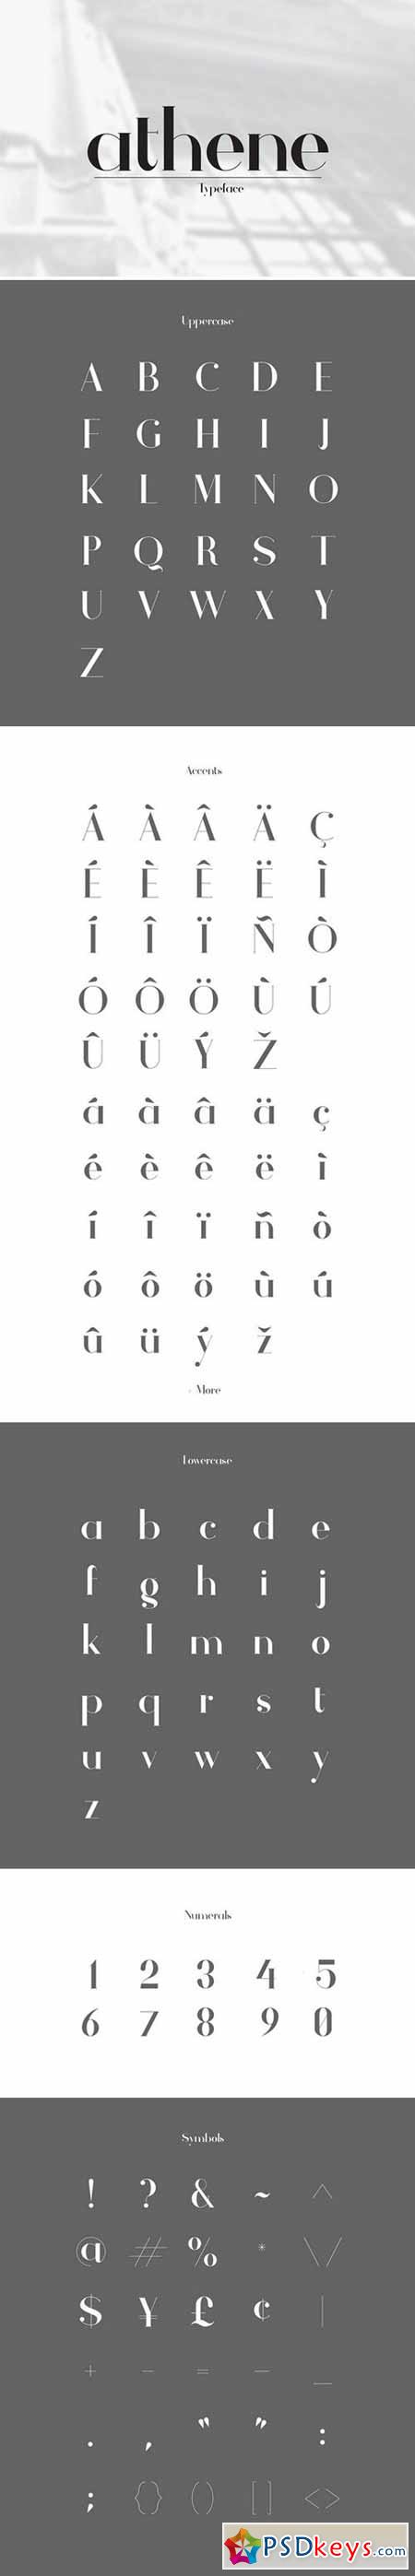 Athene Typeface